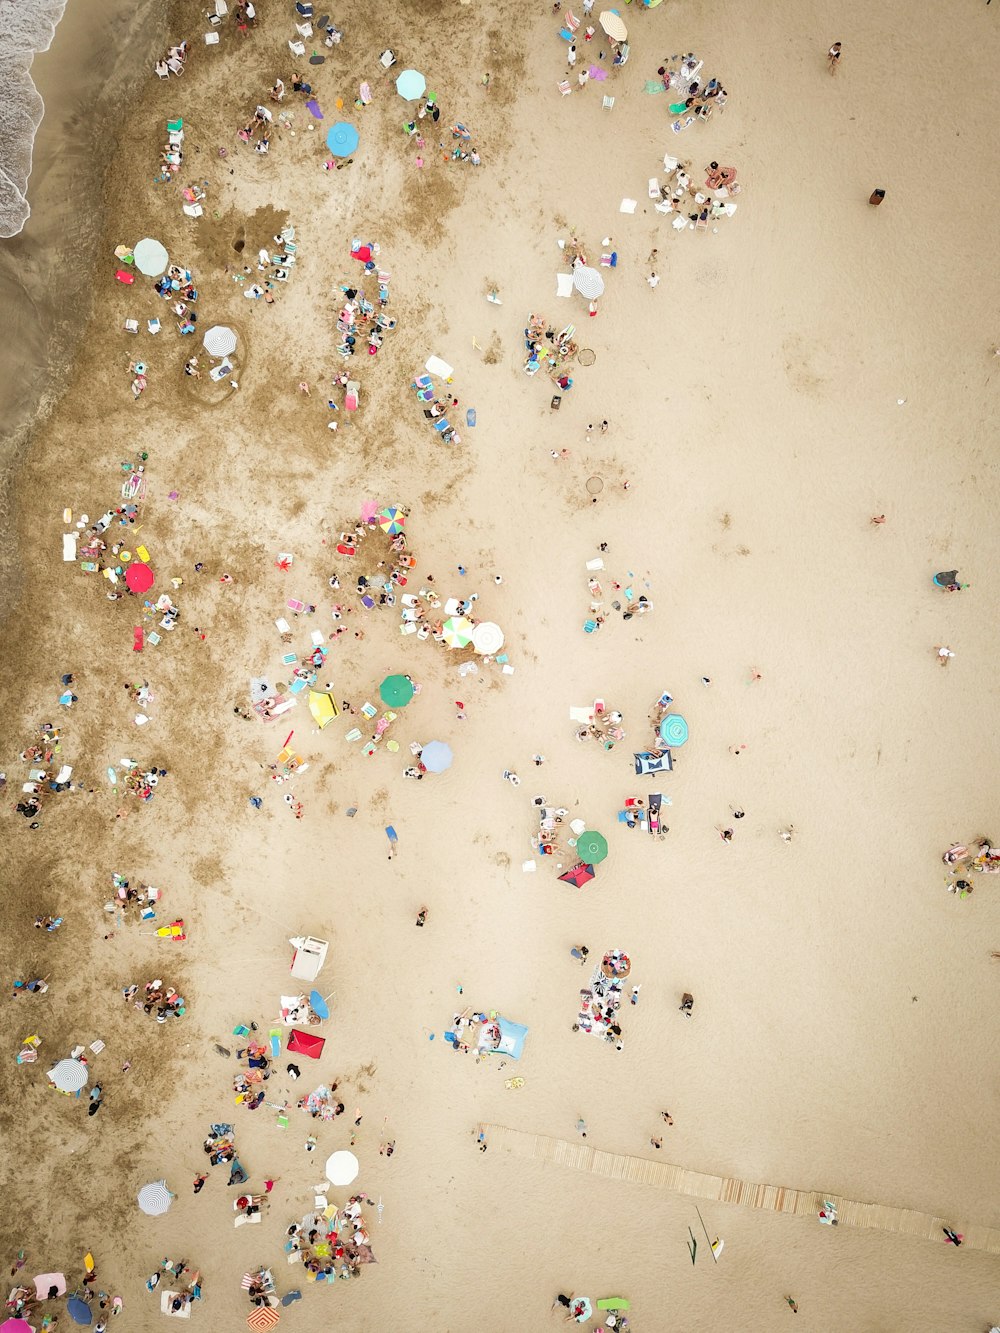 fotografia aérea de pessoas na praia